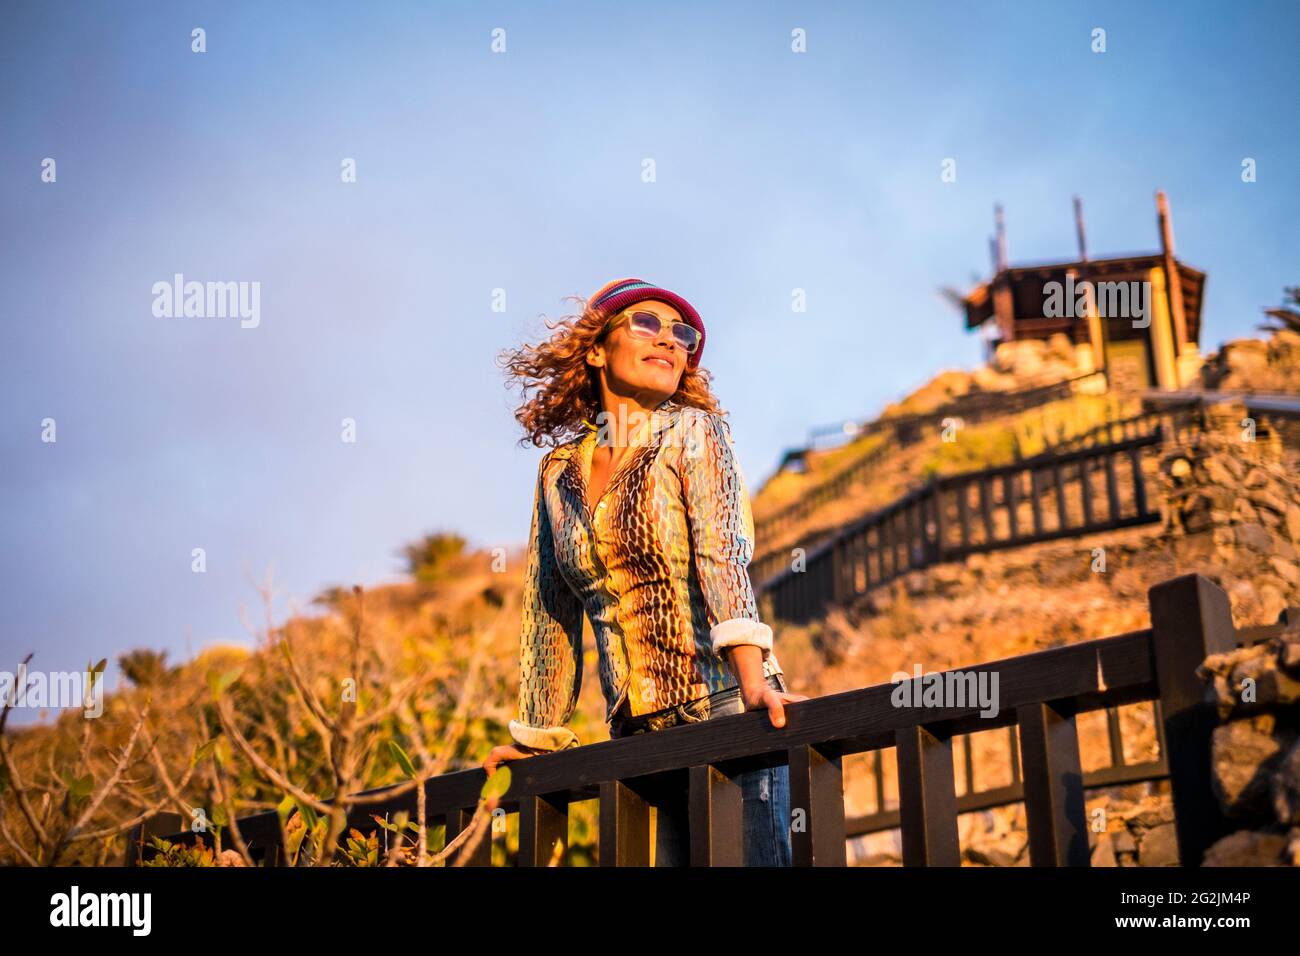 Schöne Frau steht und ejoying den Sonnenuntergang Sonne Licht auf dem Gesicht - Porträt von jungen hübschen weiblichen Menschen im Freien entspannen Freizeitbeschäftigung - Tourist-Look und trendige Kleidung modernen Stil Stockfoto